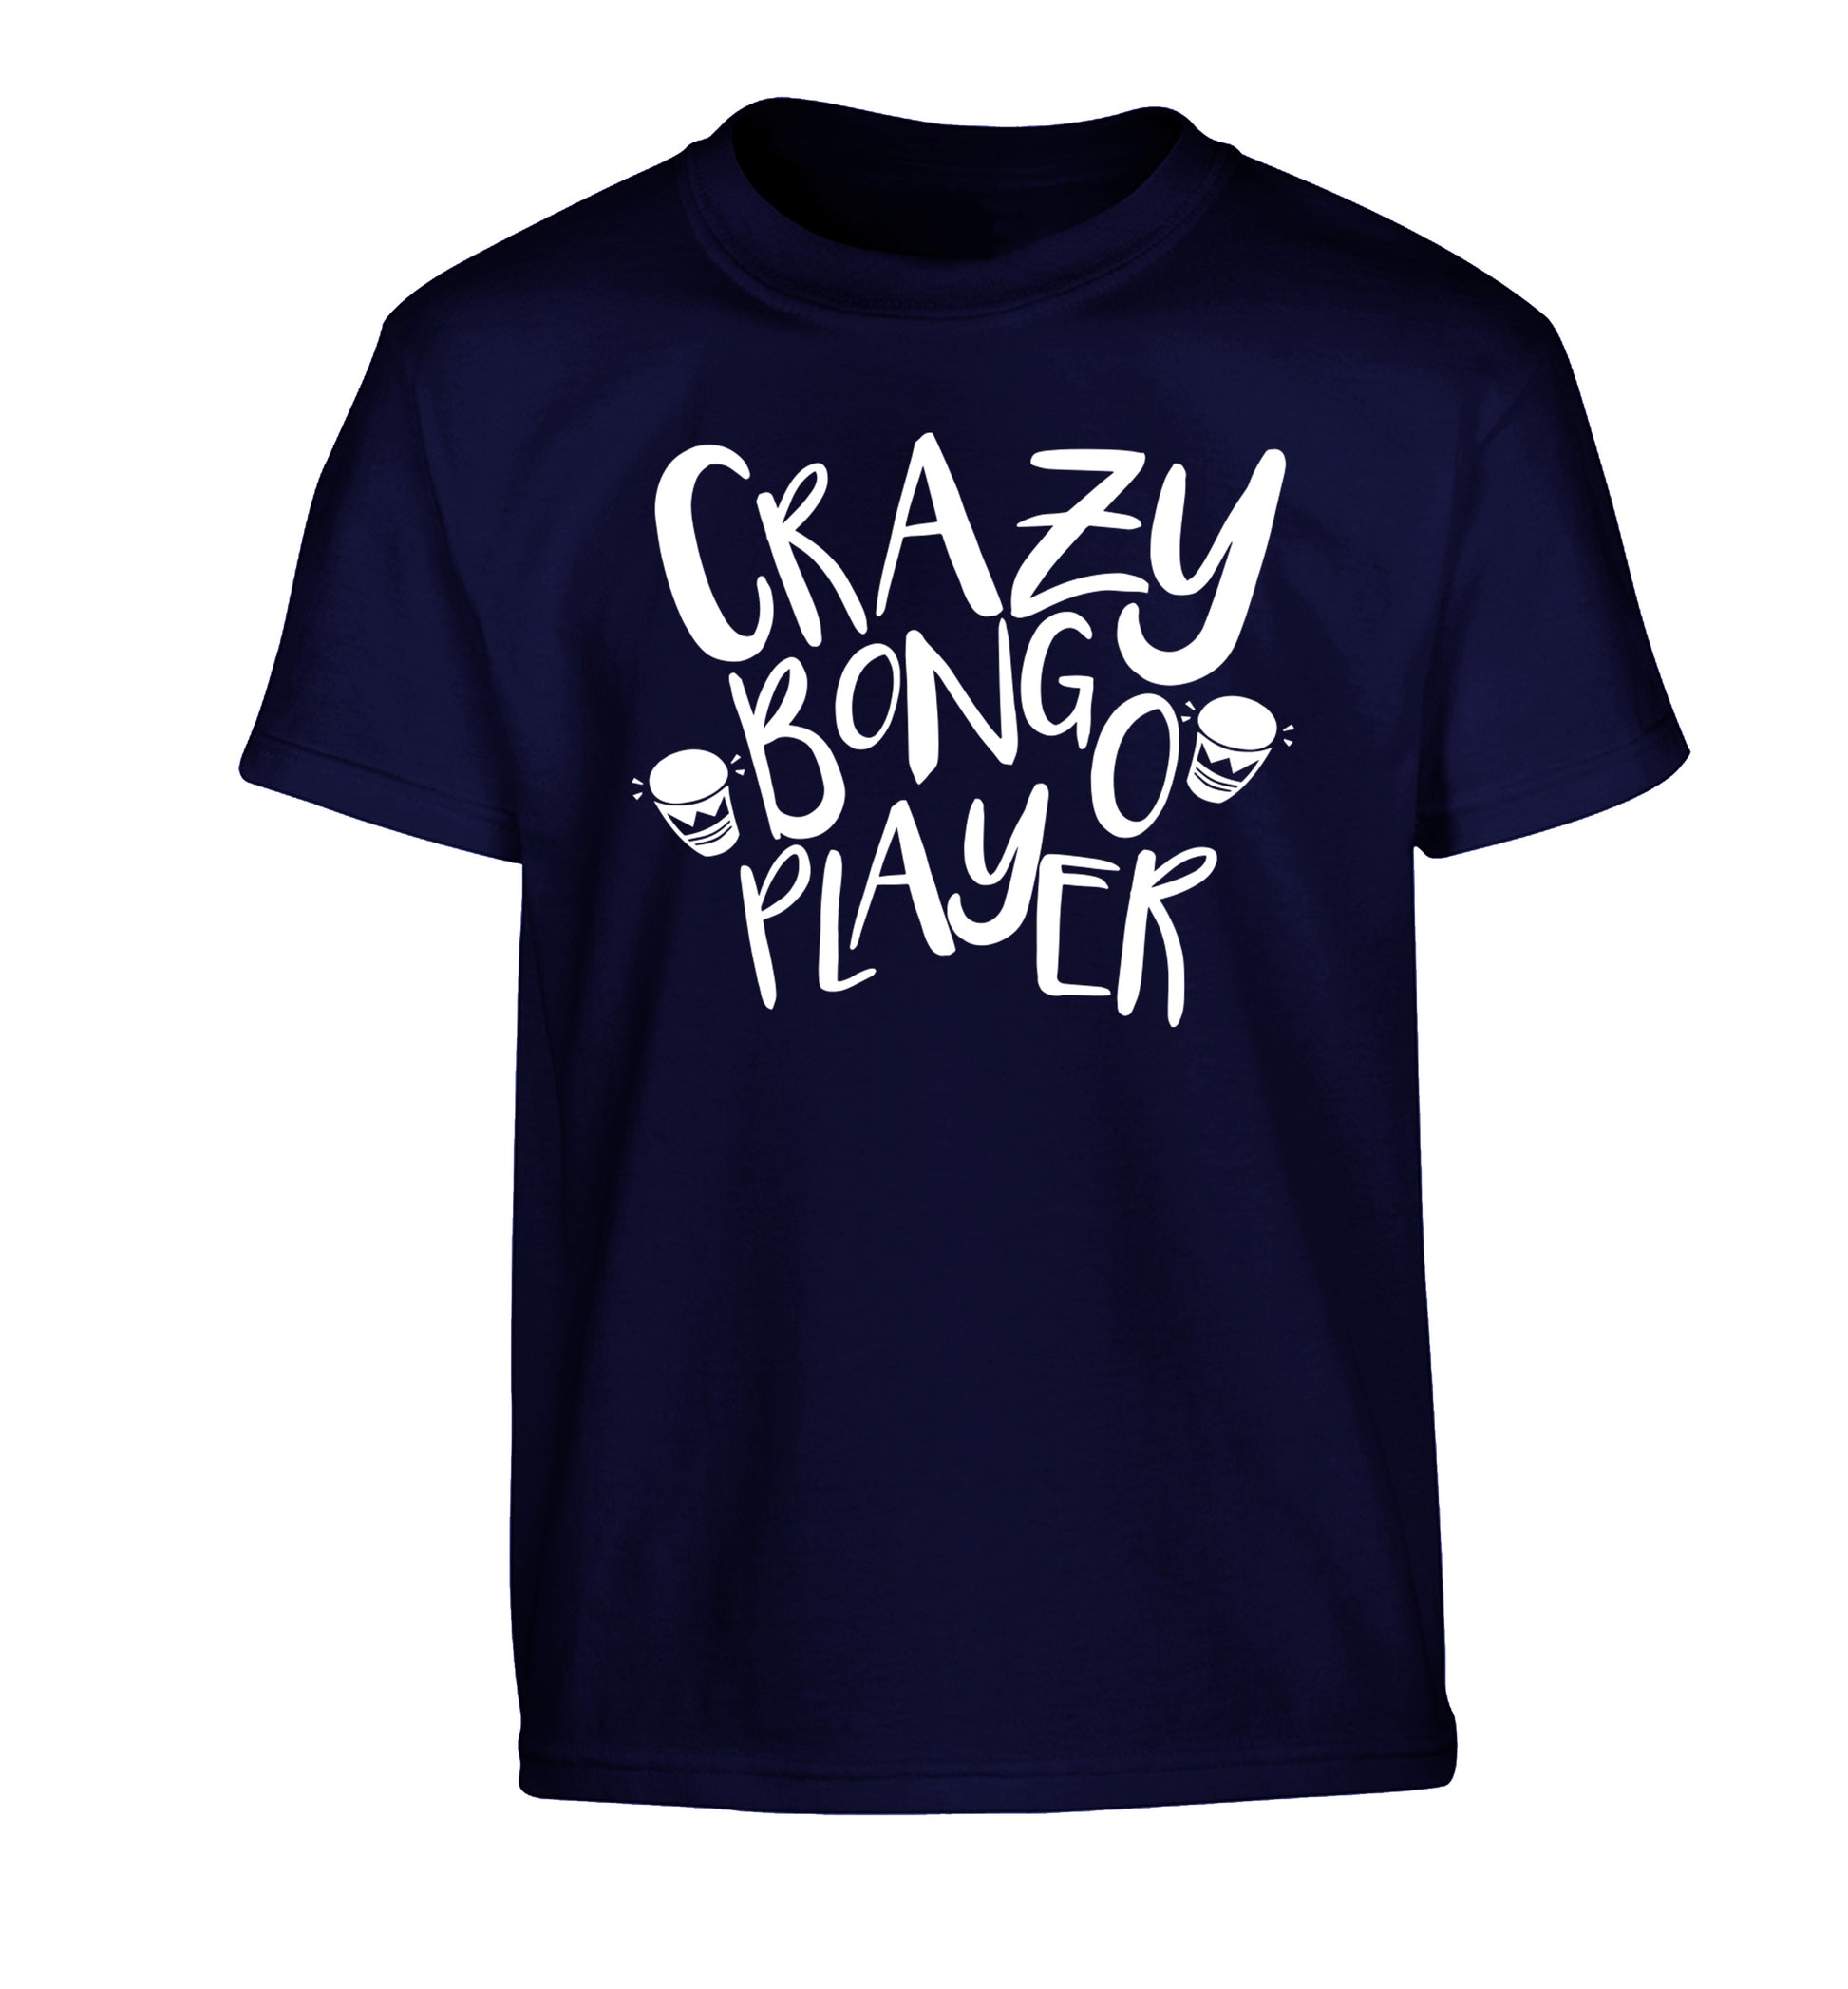 Crazy bongo player Children's navy Tshirt 12-14 Years